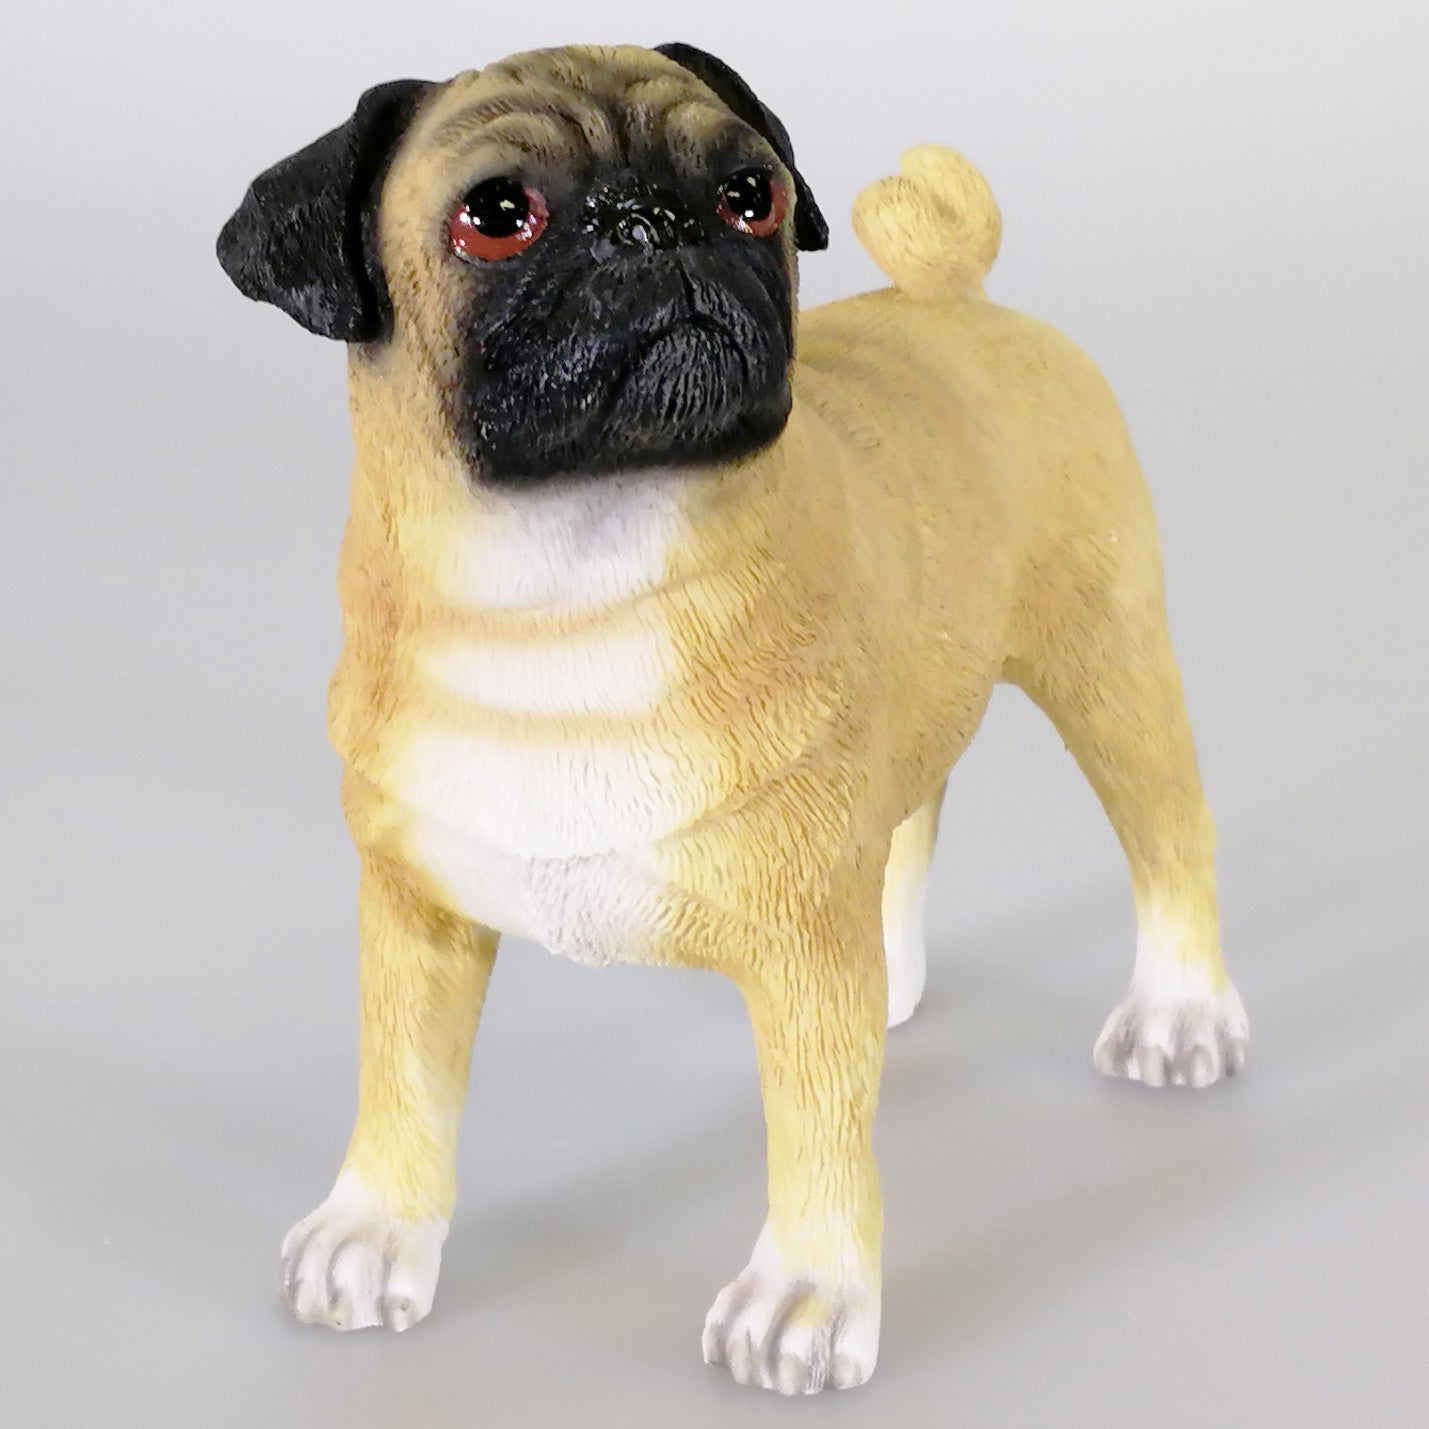 Leonardo Collection - Pug Dog Figurine